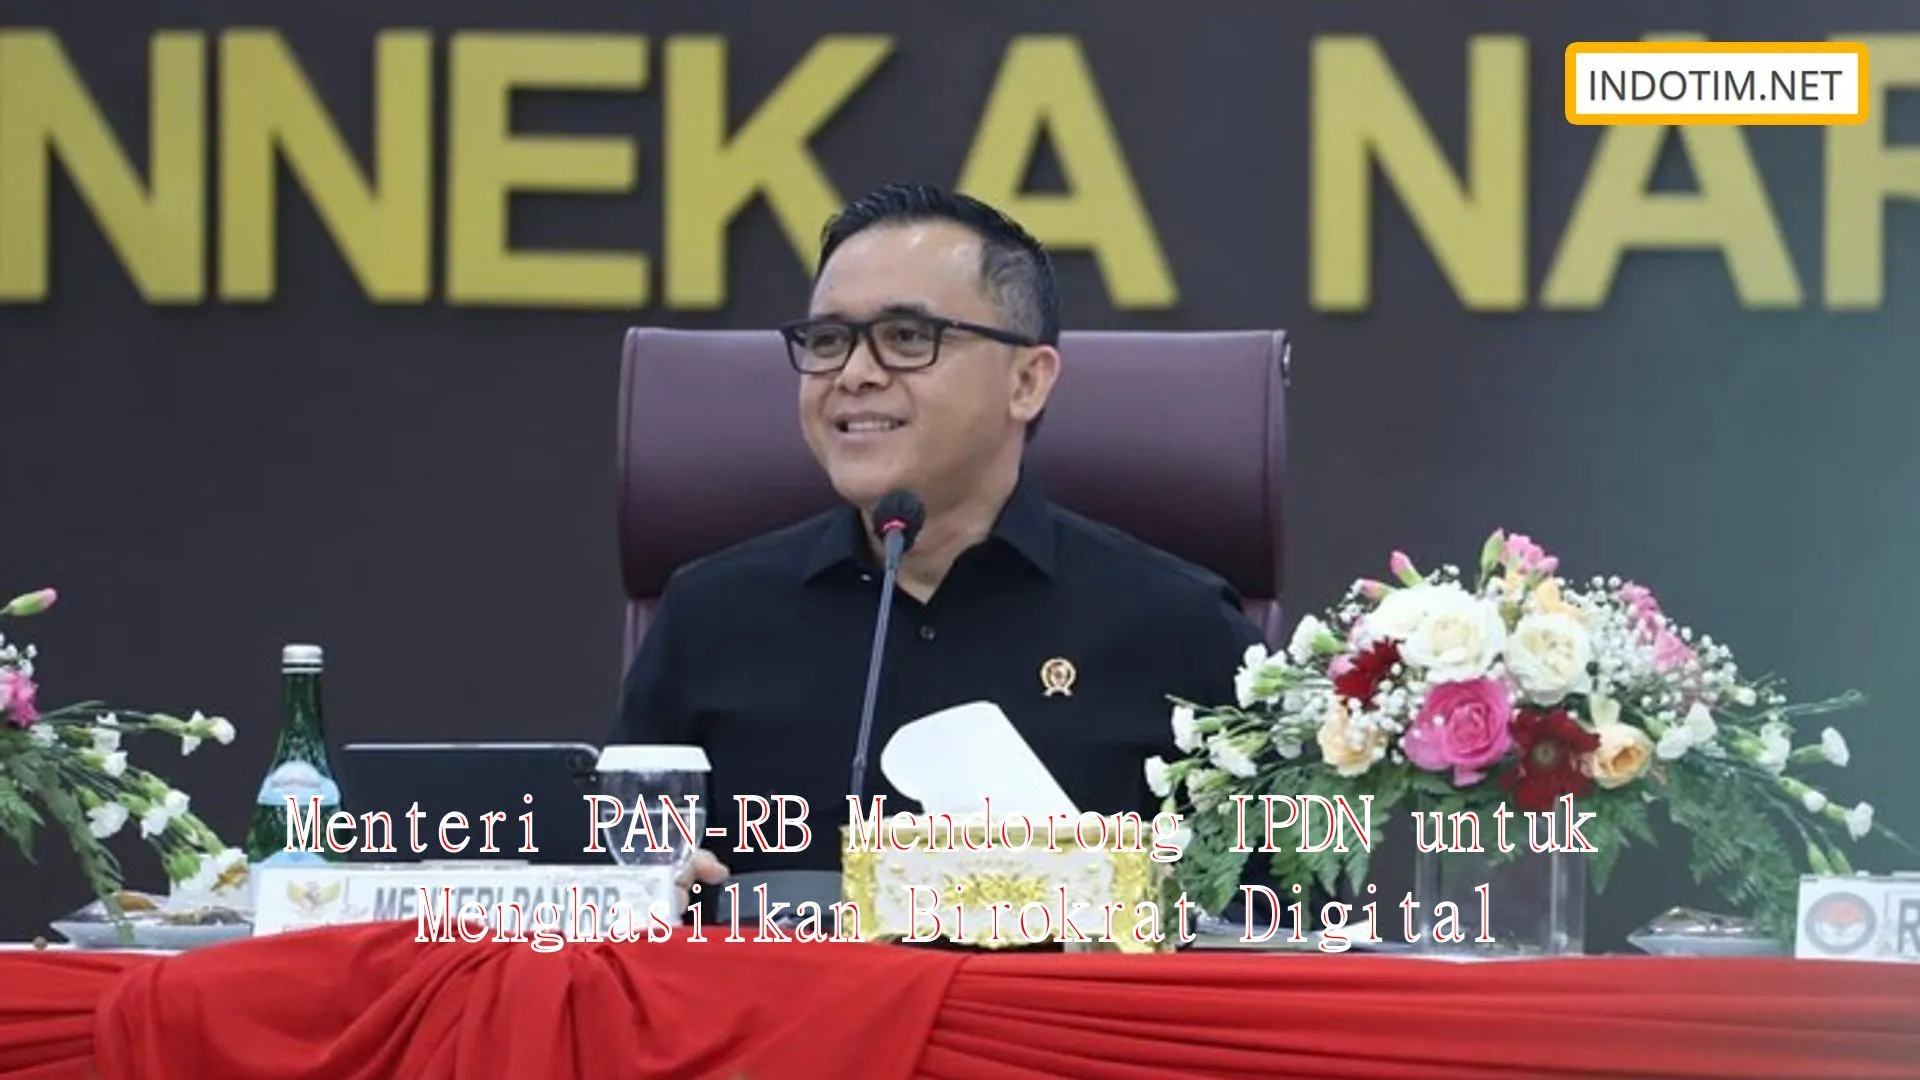 Menteri PAN-RB Mendorong IPDN untuk Menghasilkan Birokrat Digital